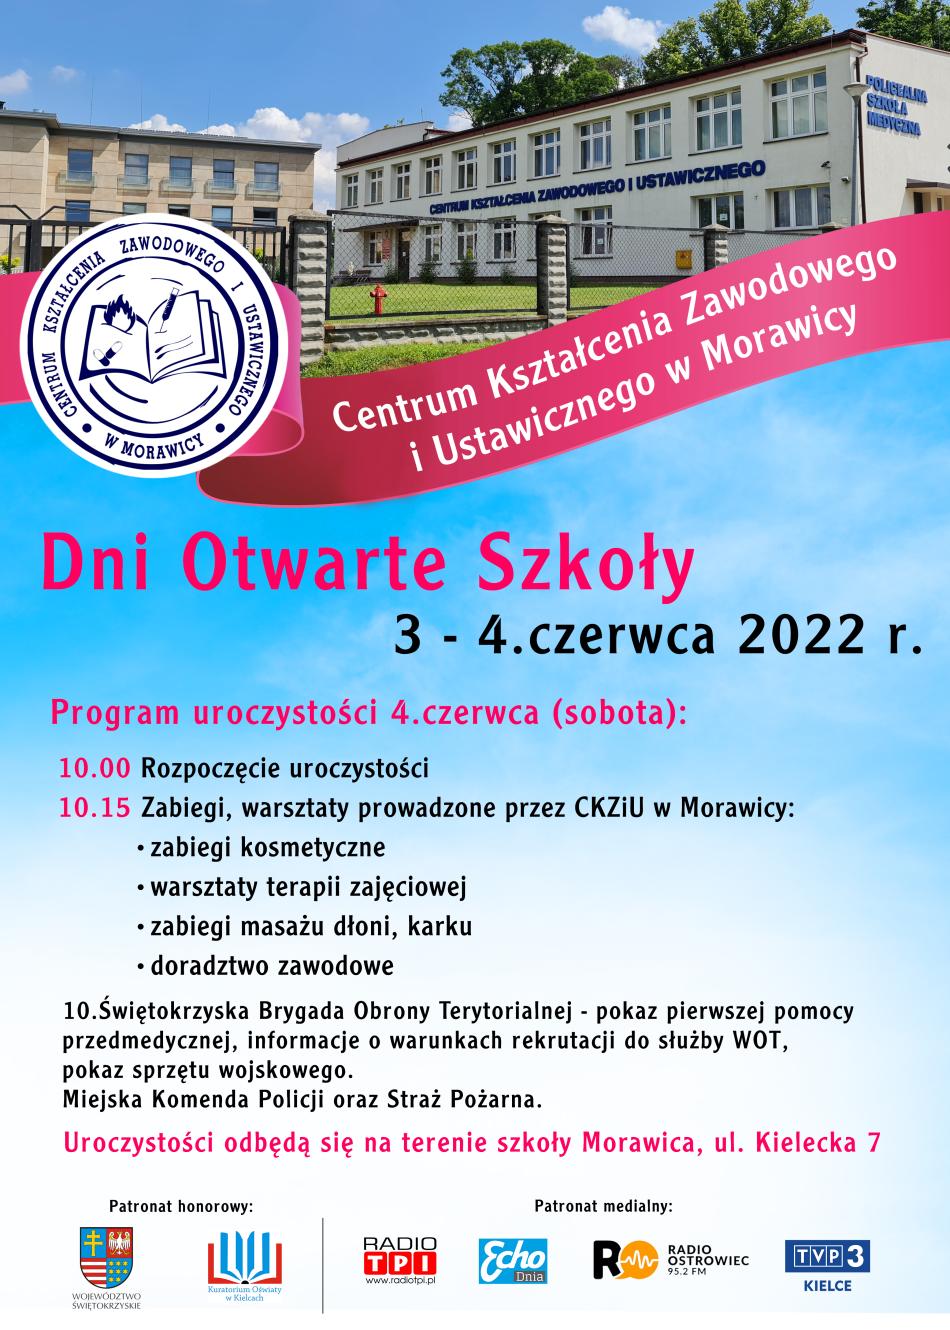 Centrum Kształcenia Zawodowego i Ustawicznego w Morawicy zaprasza Państwa na Dni Otwarte Szkoły 3-4 czerwca